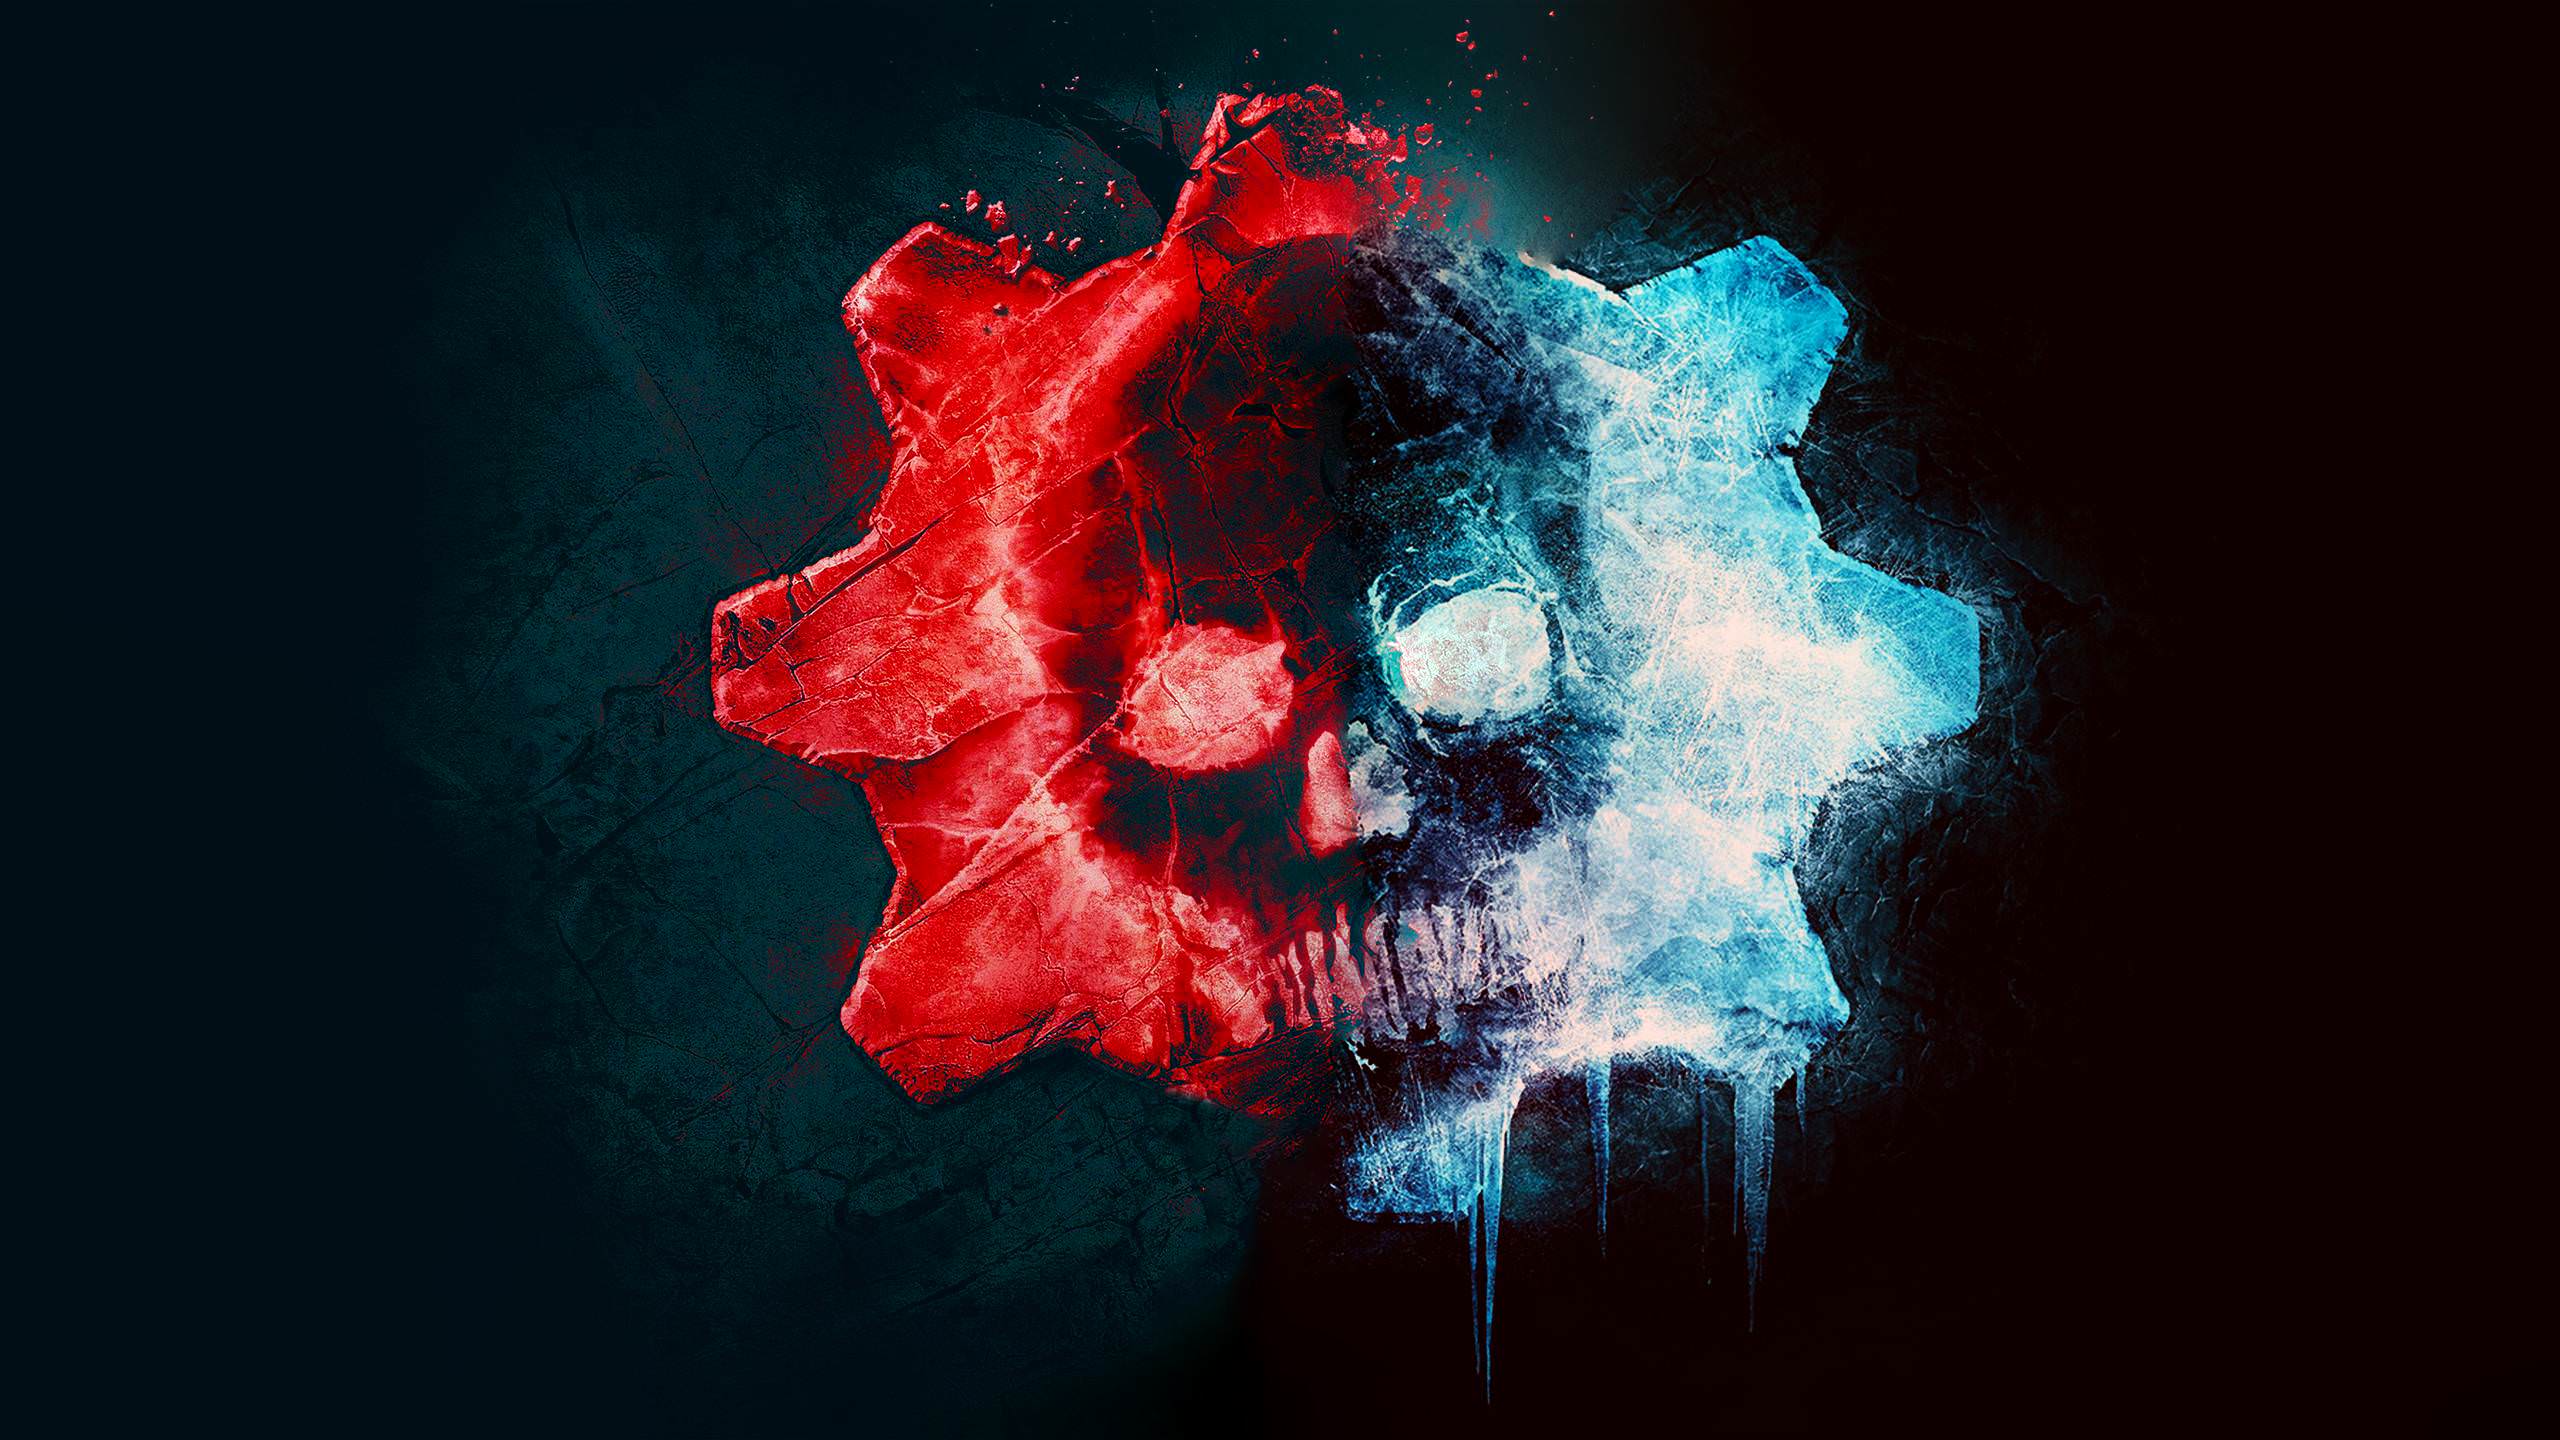 Gears Of War 5 Omen , HD Wallpaper & Backgrounds